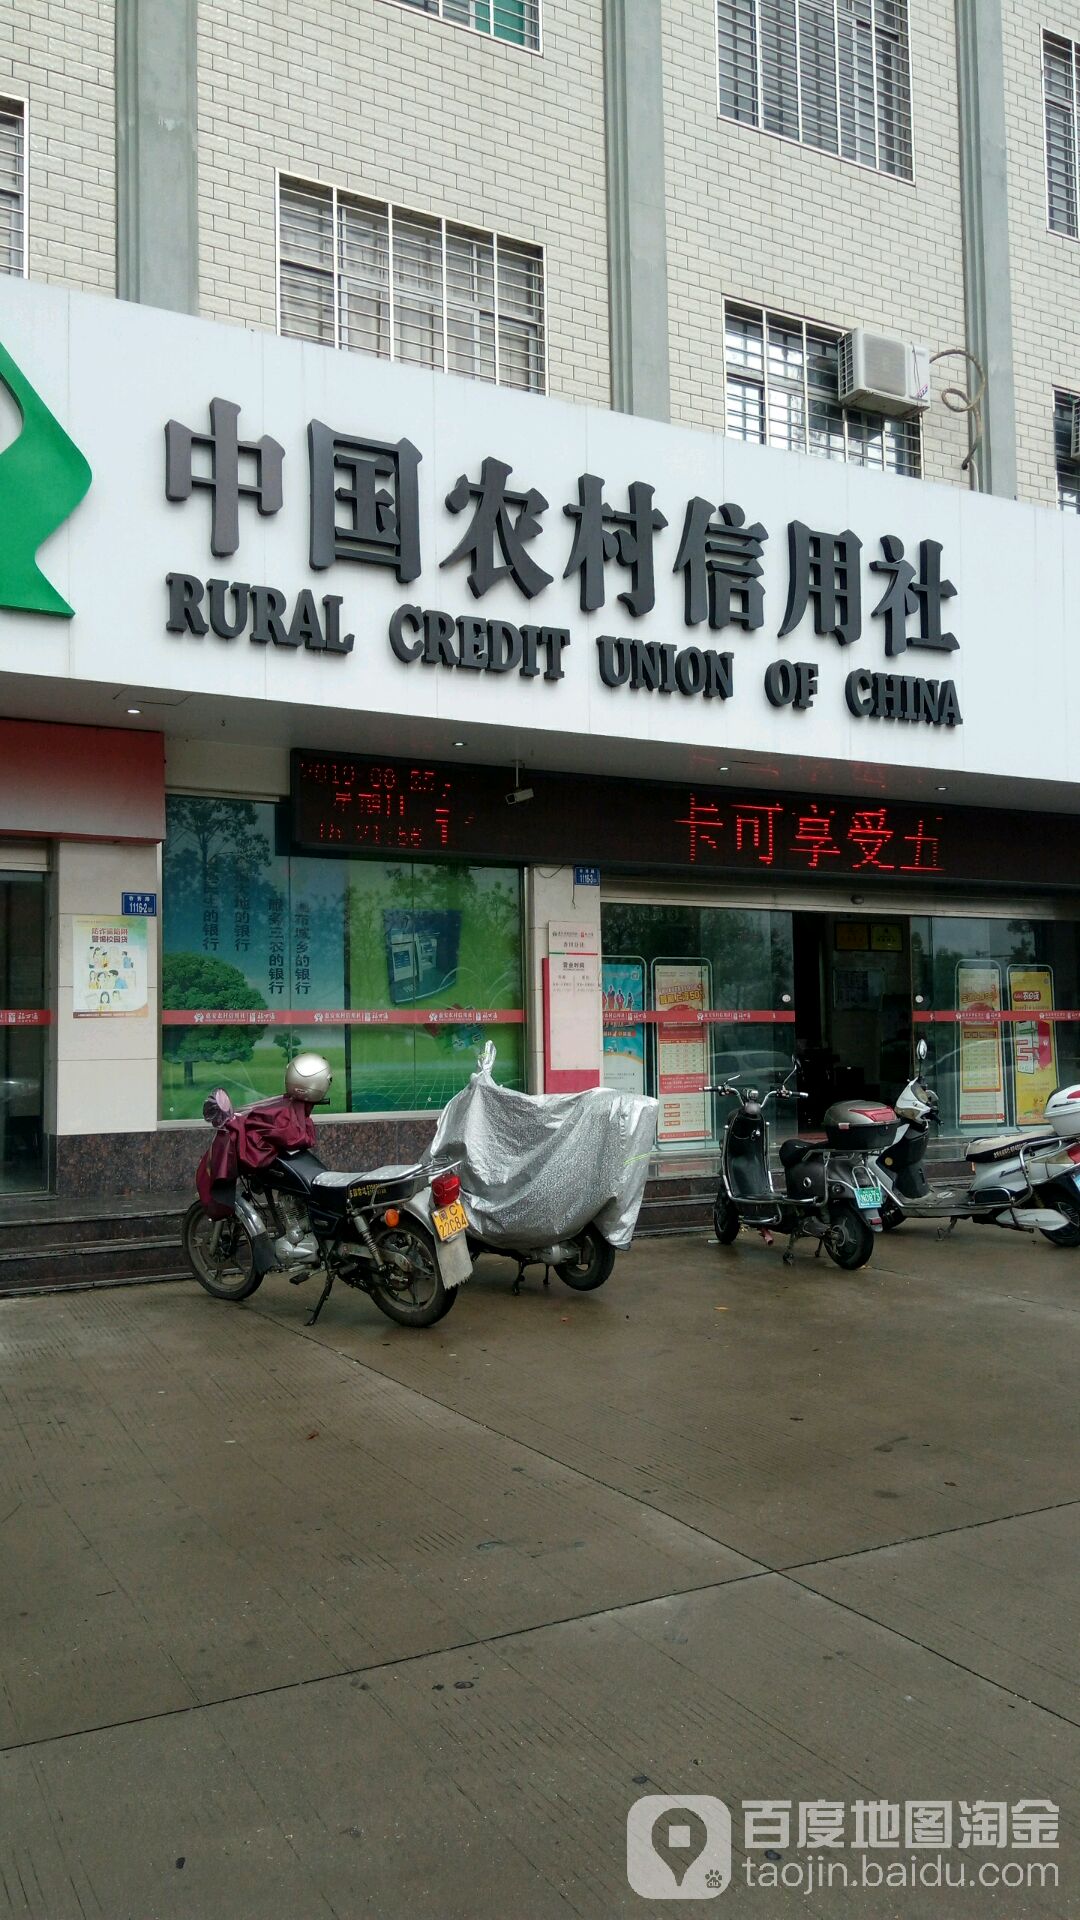 中国农村信用社